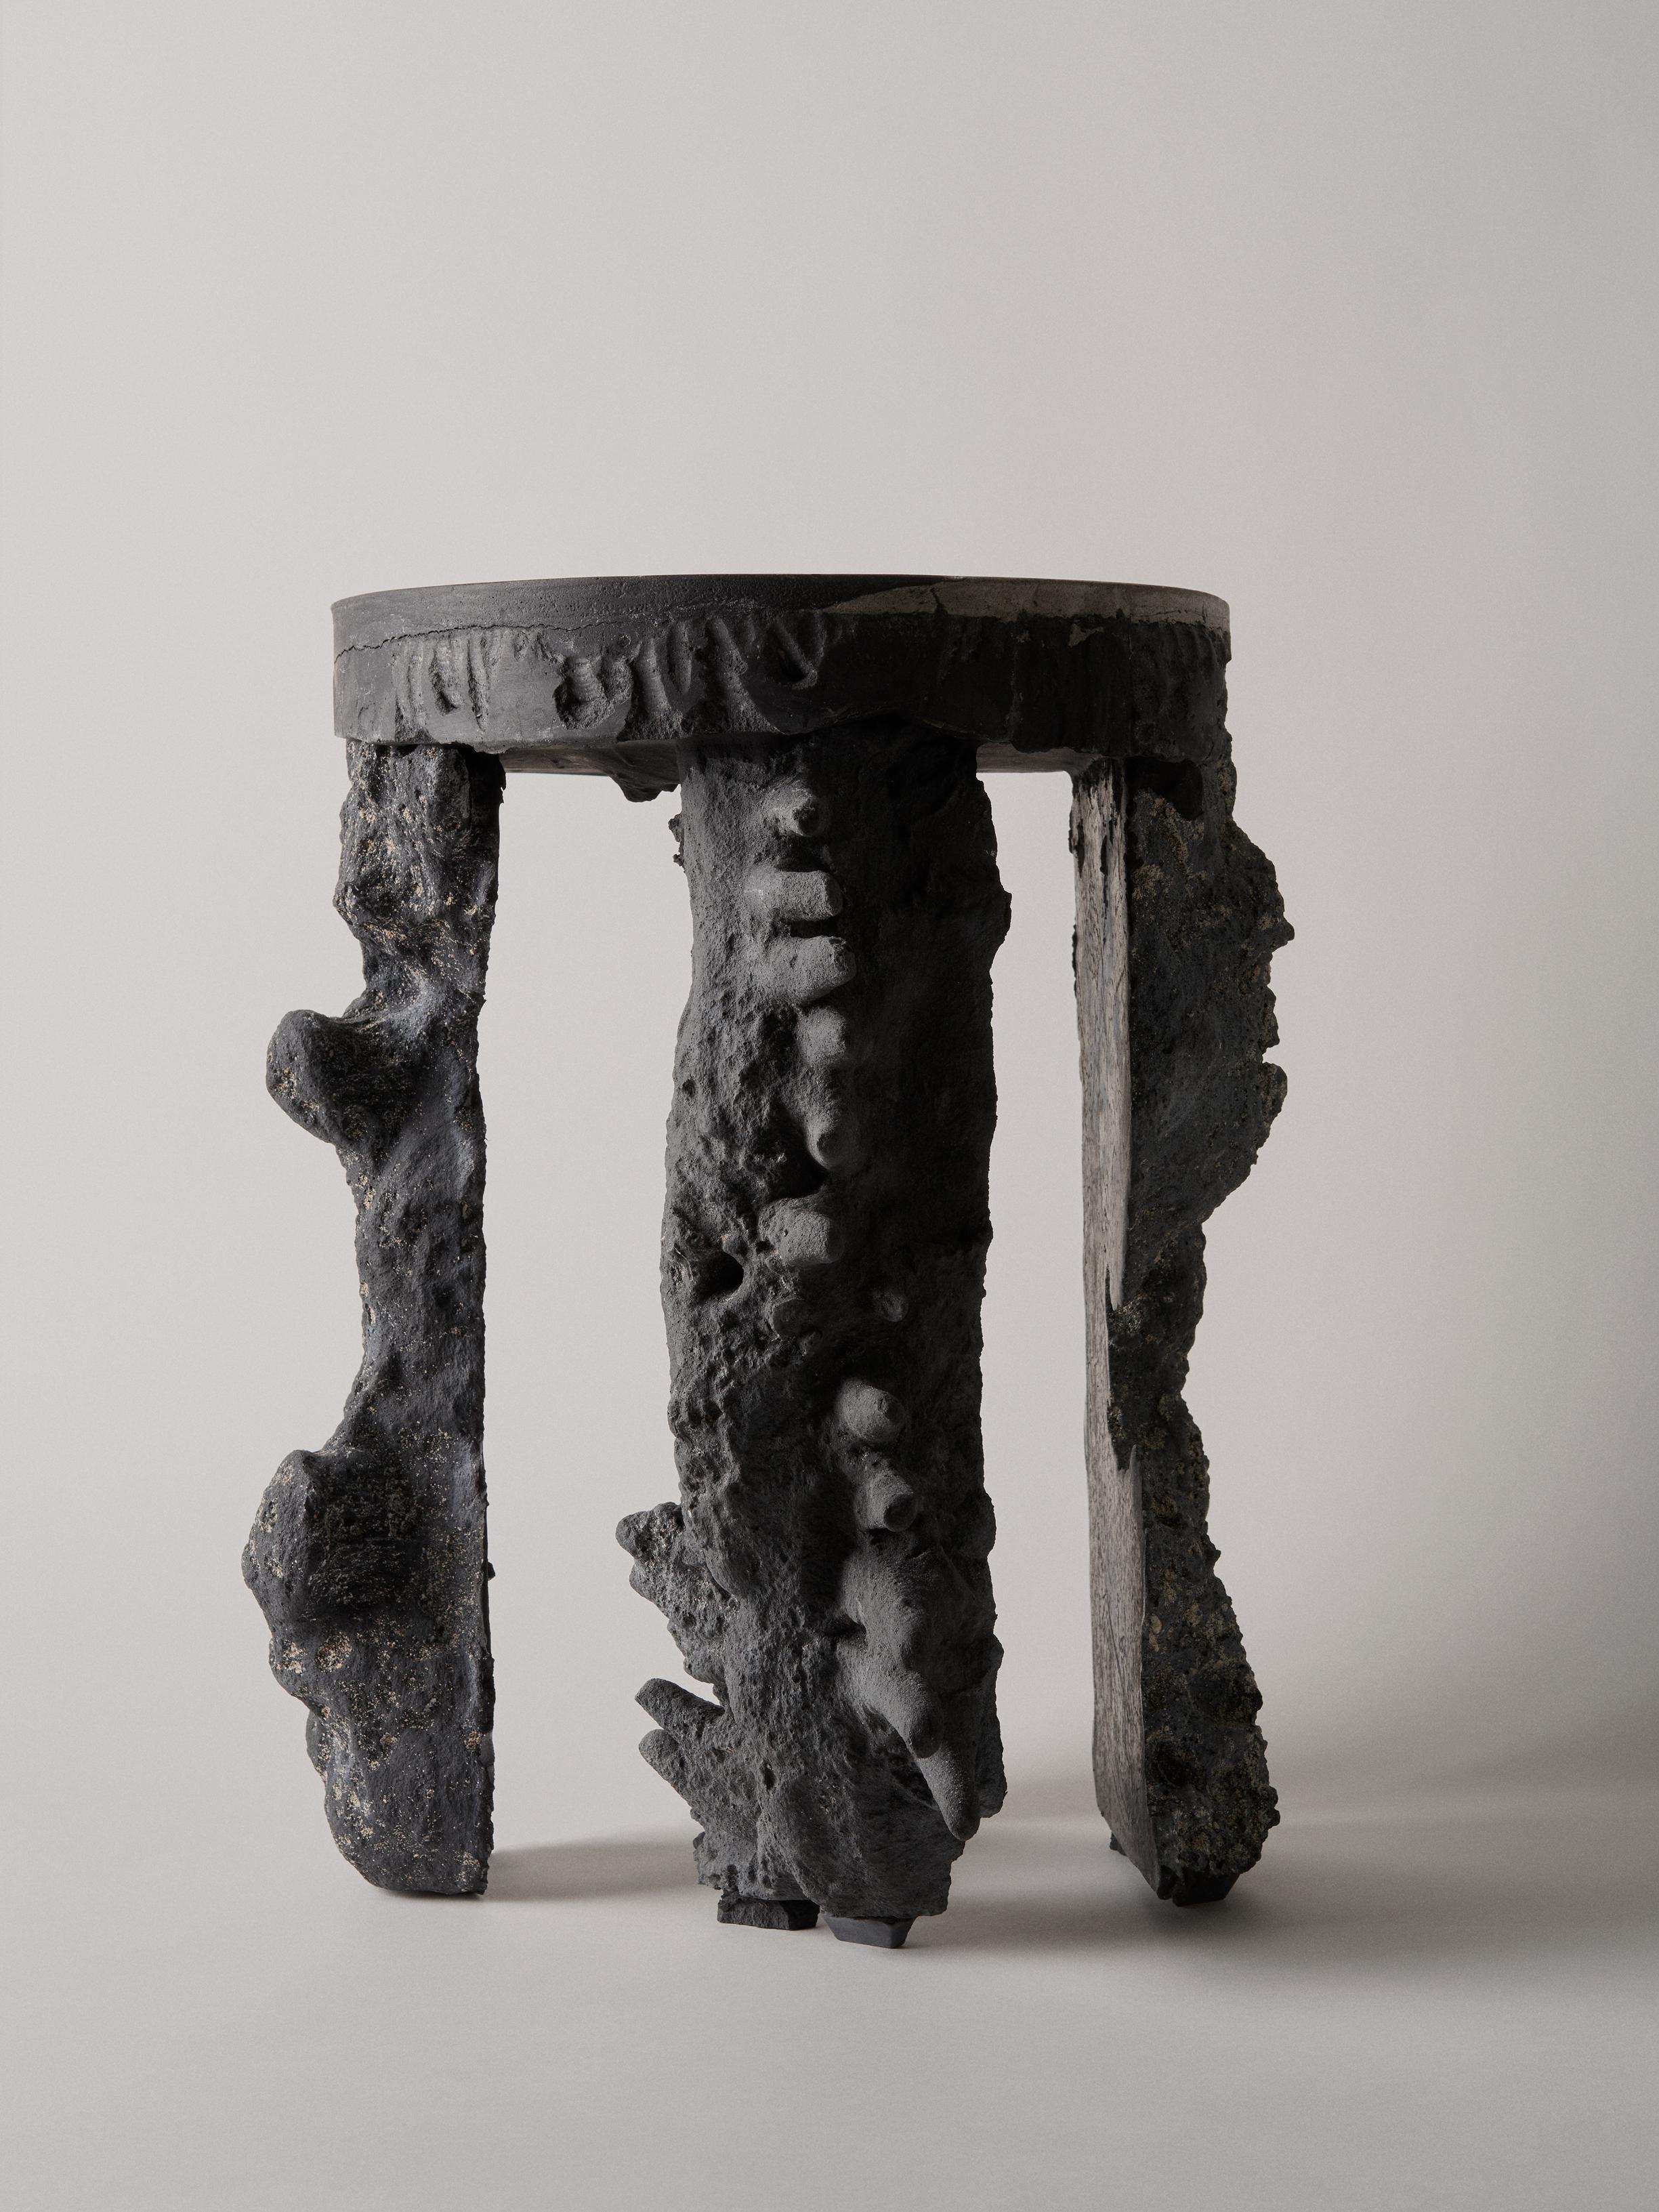 Socle à quatre éléments de Kajsa Melchior
Collection Collectional Erosion
Dimensions : H environ 45 cm
Ø approximatif 35 cm
MATERIAL : Sculptée dans le sable par la pression de l'air, de l'eau et du corps humain.
Développé en cristal, coloré